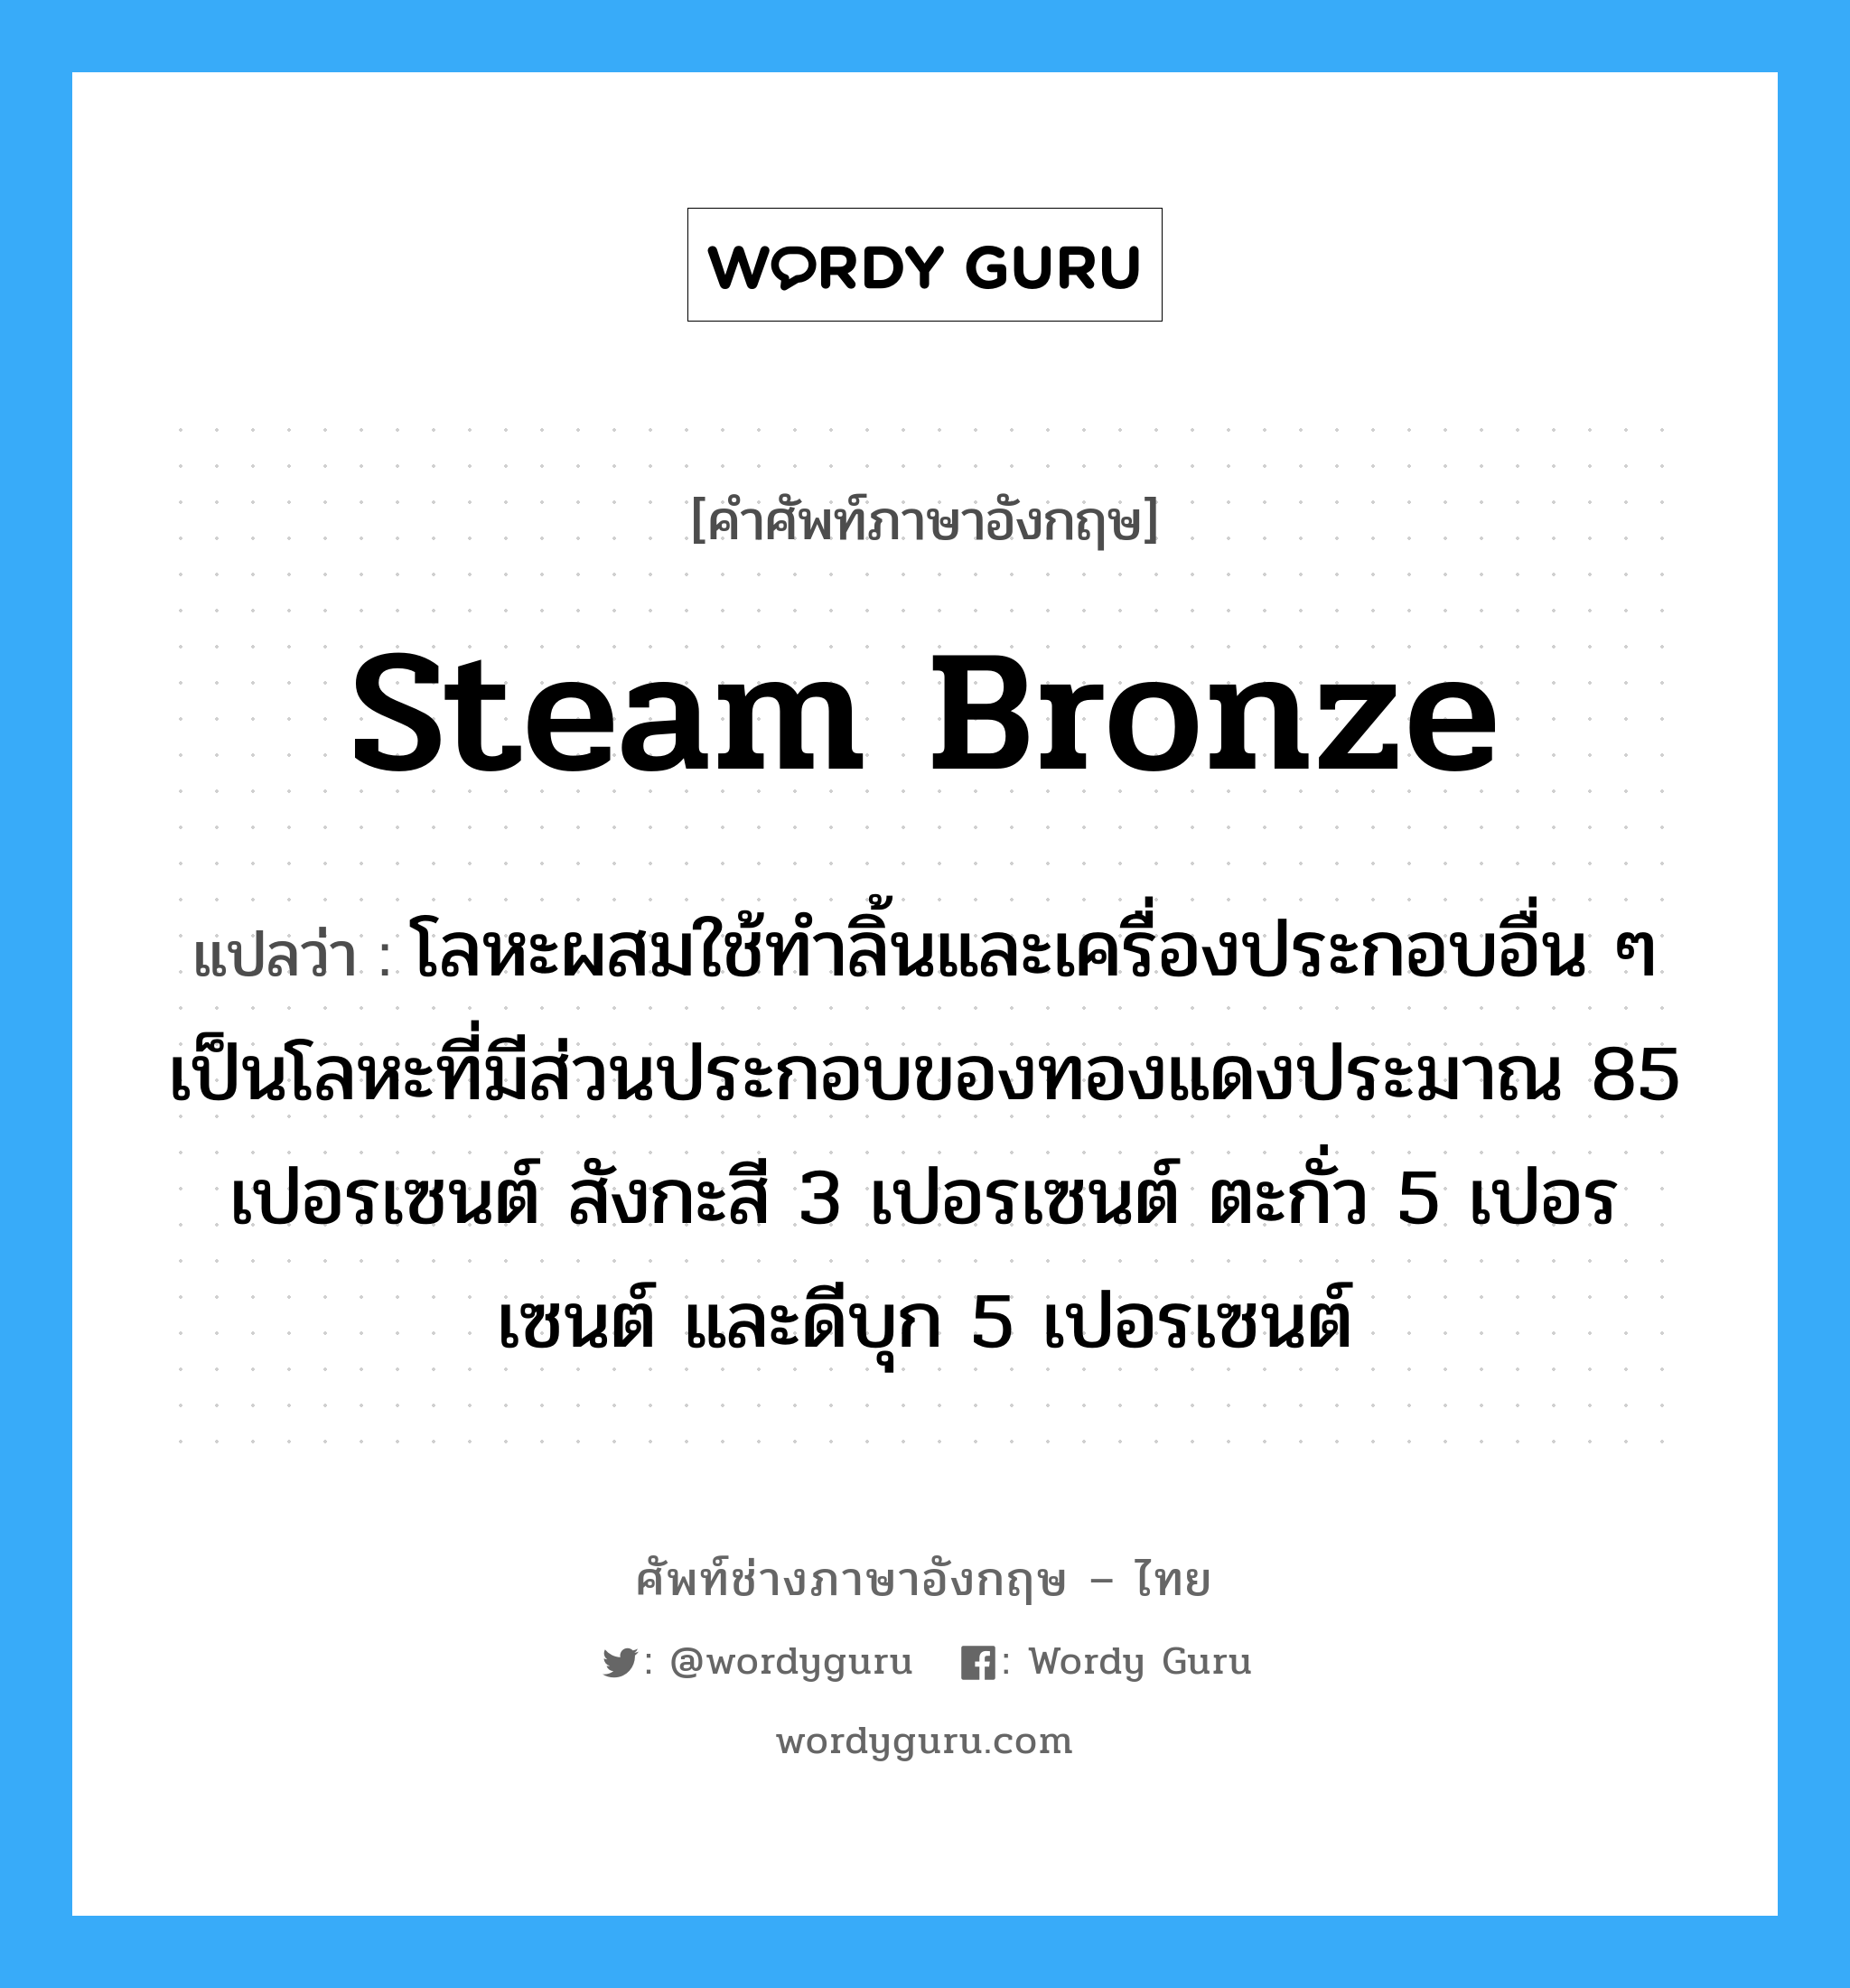 steam bronze แปลว่า?, คำศัพท์ช่างภาษาอังกฤษ - ไทย steam bronze คำศัพท์ภาษาอังกฤษ steam bronze แปลว่า โลหะผสมใช้ทำลิ้นและเครื่องประกอบอื่น ๆ เป็นโลหะที่มีส่วนประกอบของทองแดงประมาณ 85 เปอรเซนต์ สังกะสี 3 เปอรเซนต์ ตะกั่ว 5 เปอรเซนต์ และดีบุก 5 เปอรเซนต์